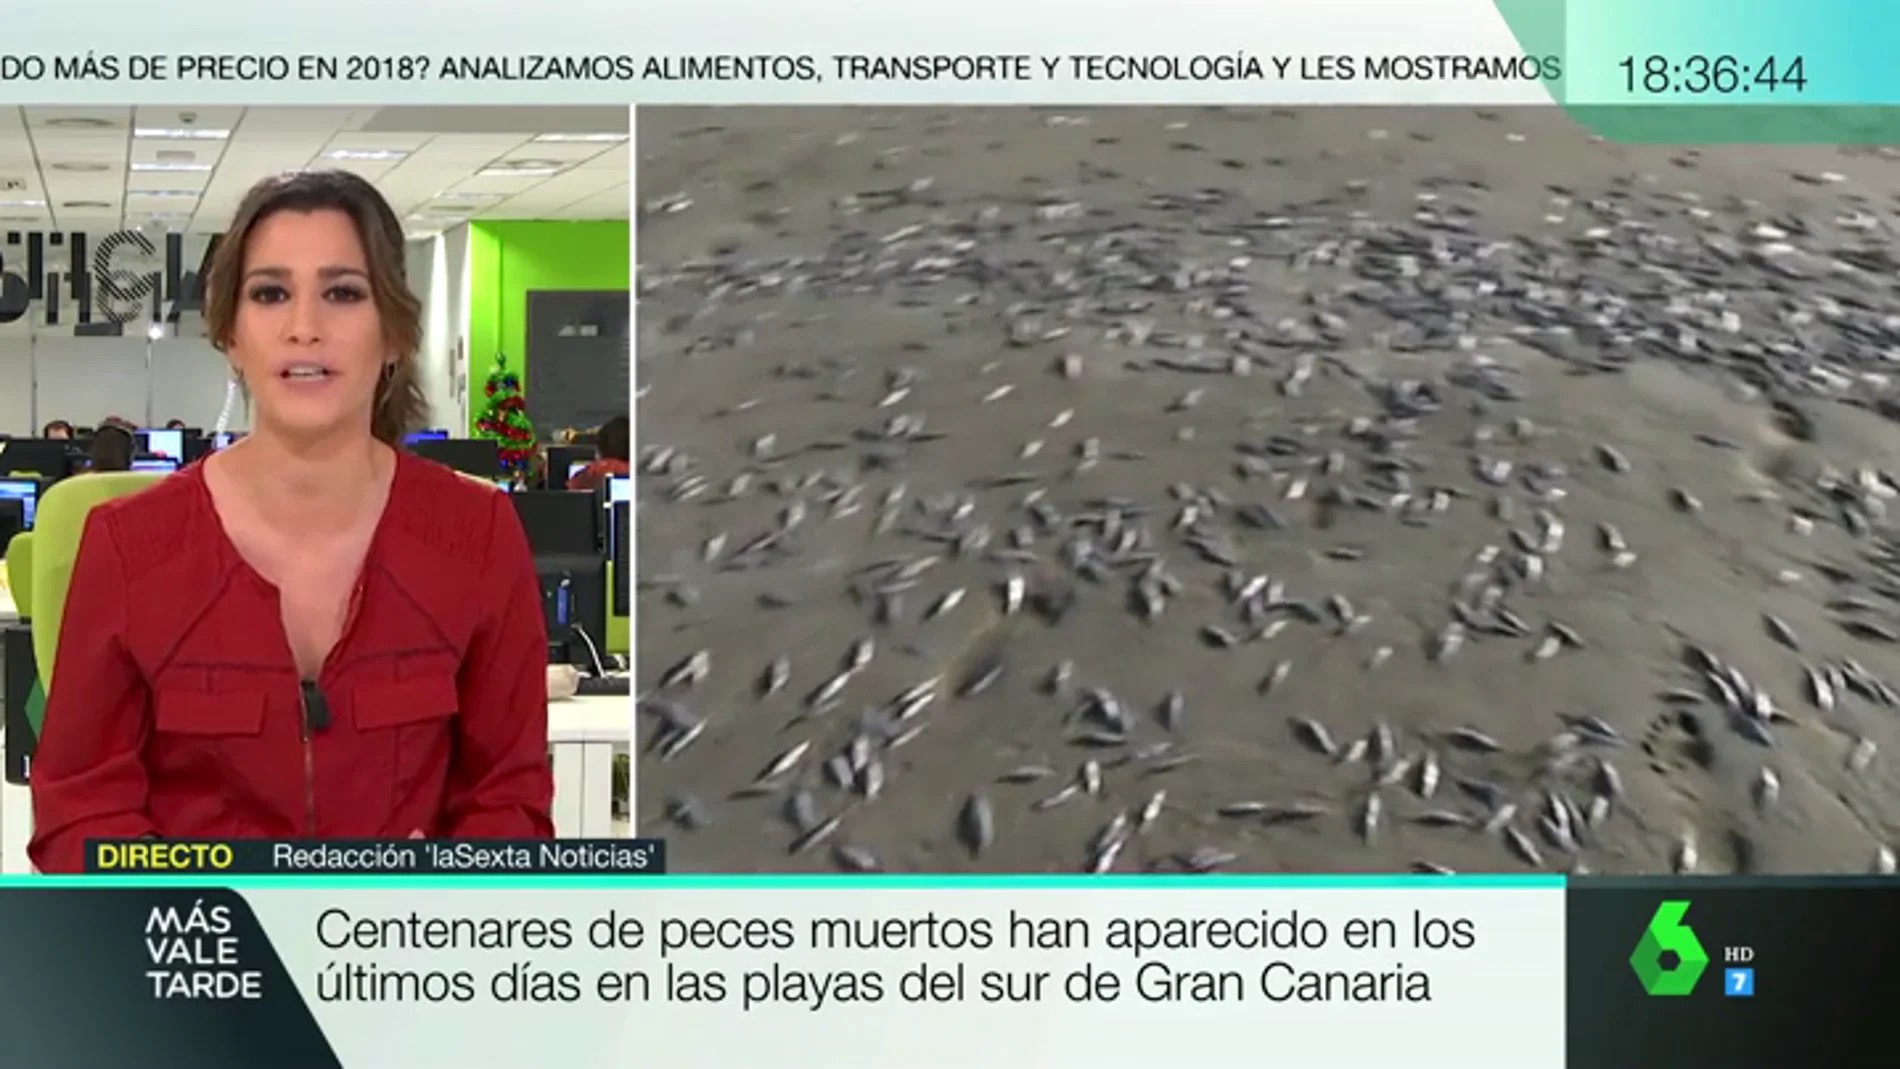 Aparecen centenares de peces muertos en las playas del sur de Gran Canaria